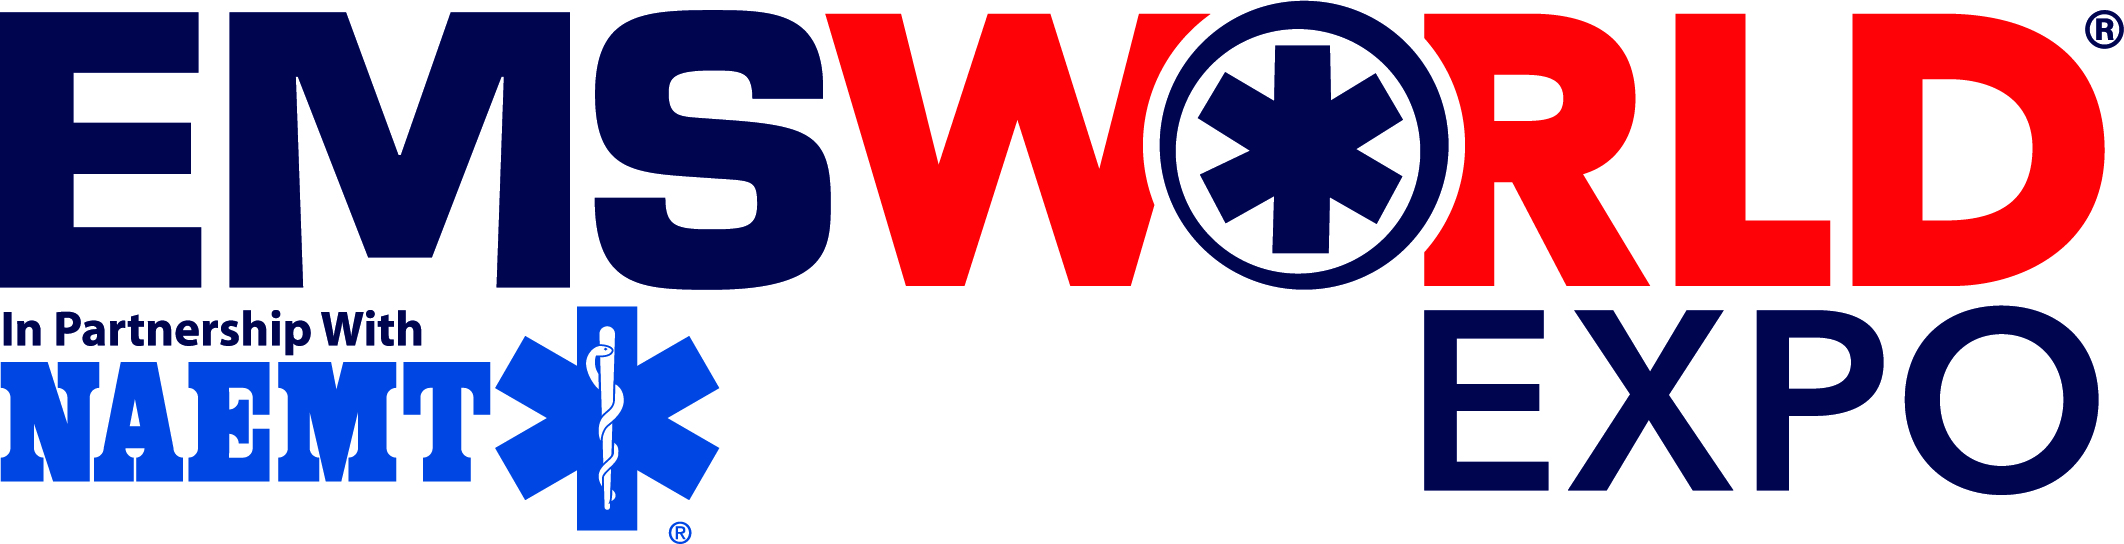 EMS world expo logo.jpg